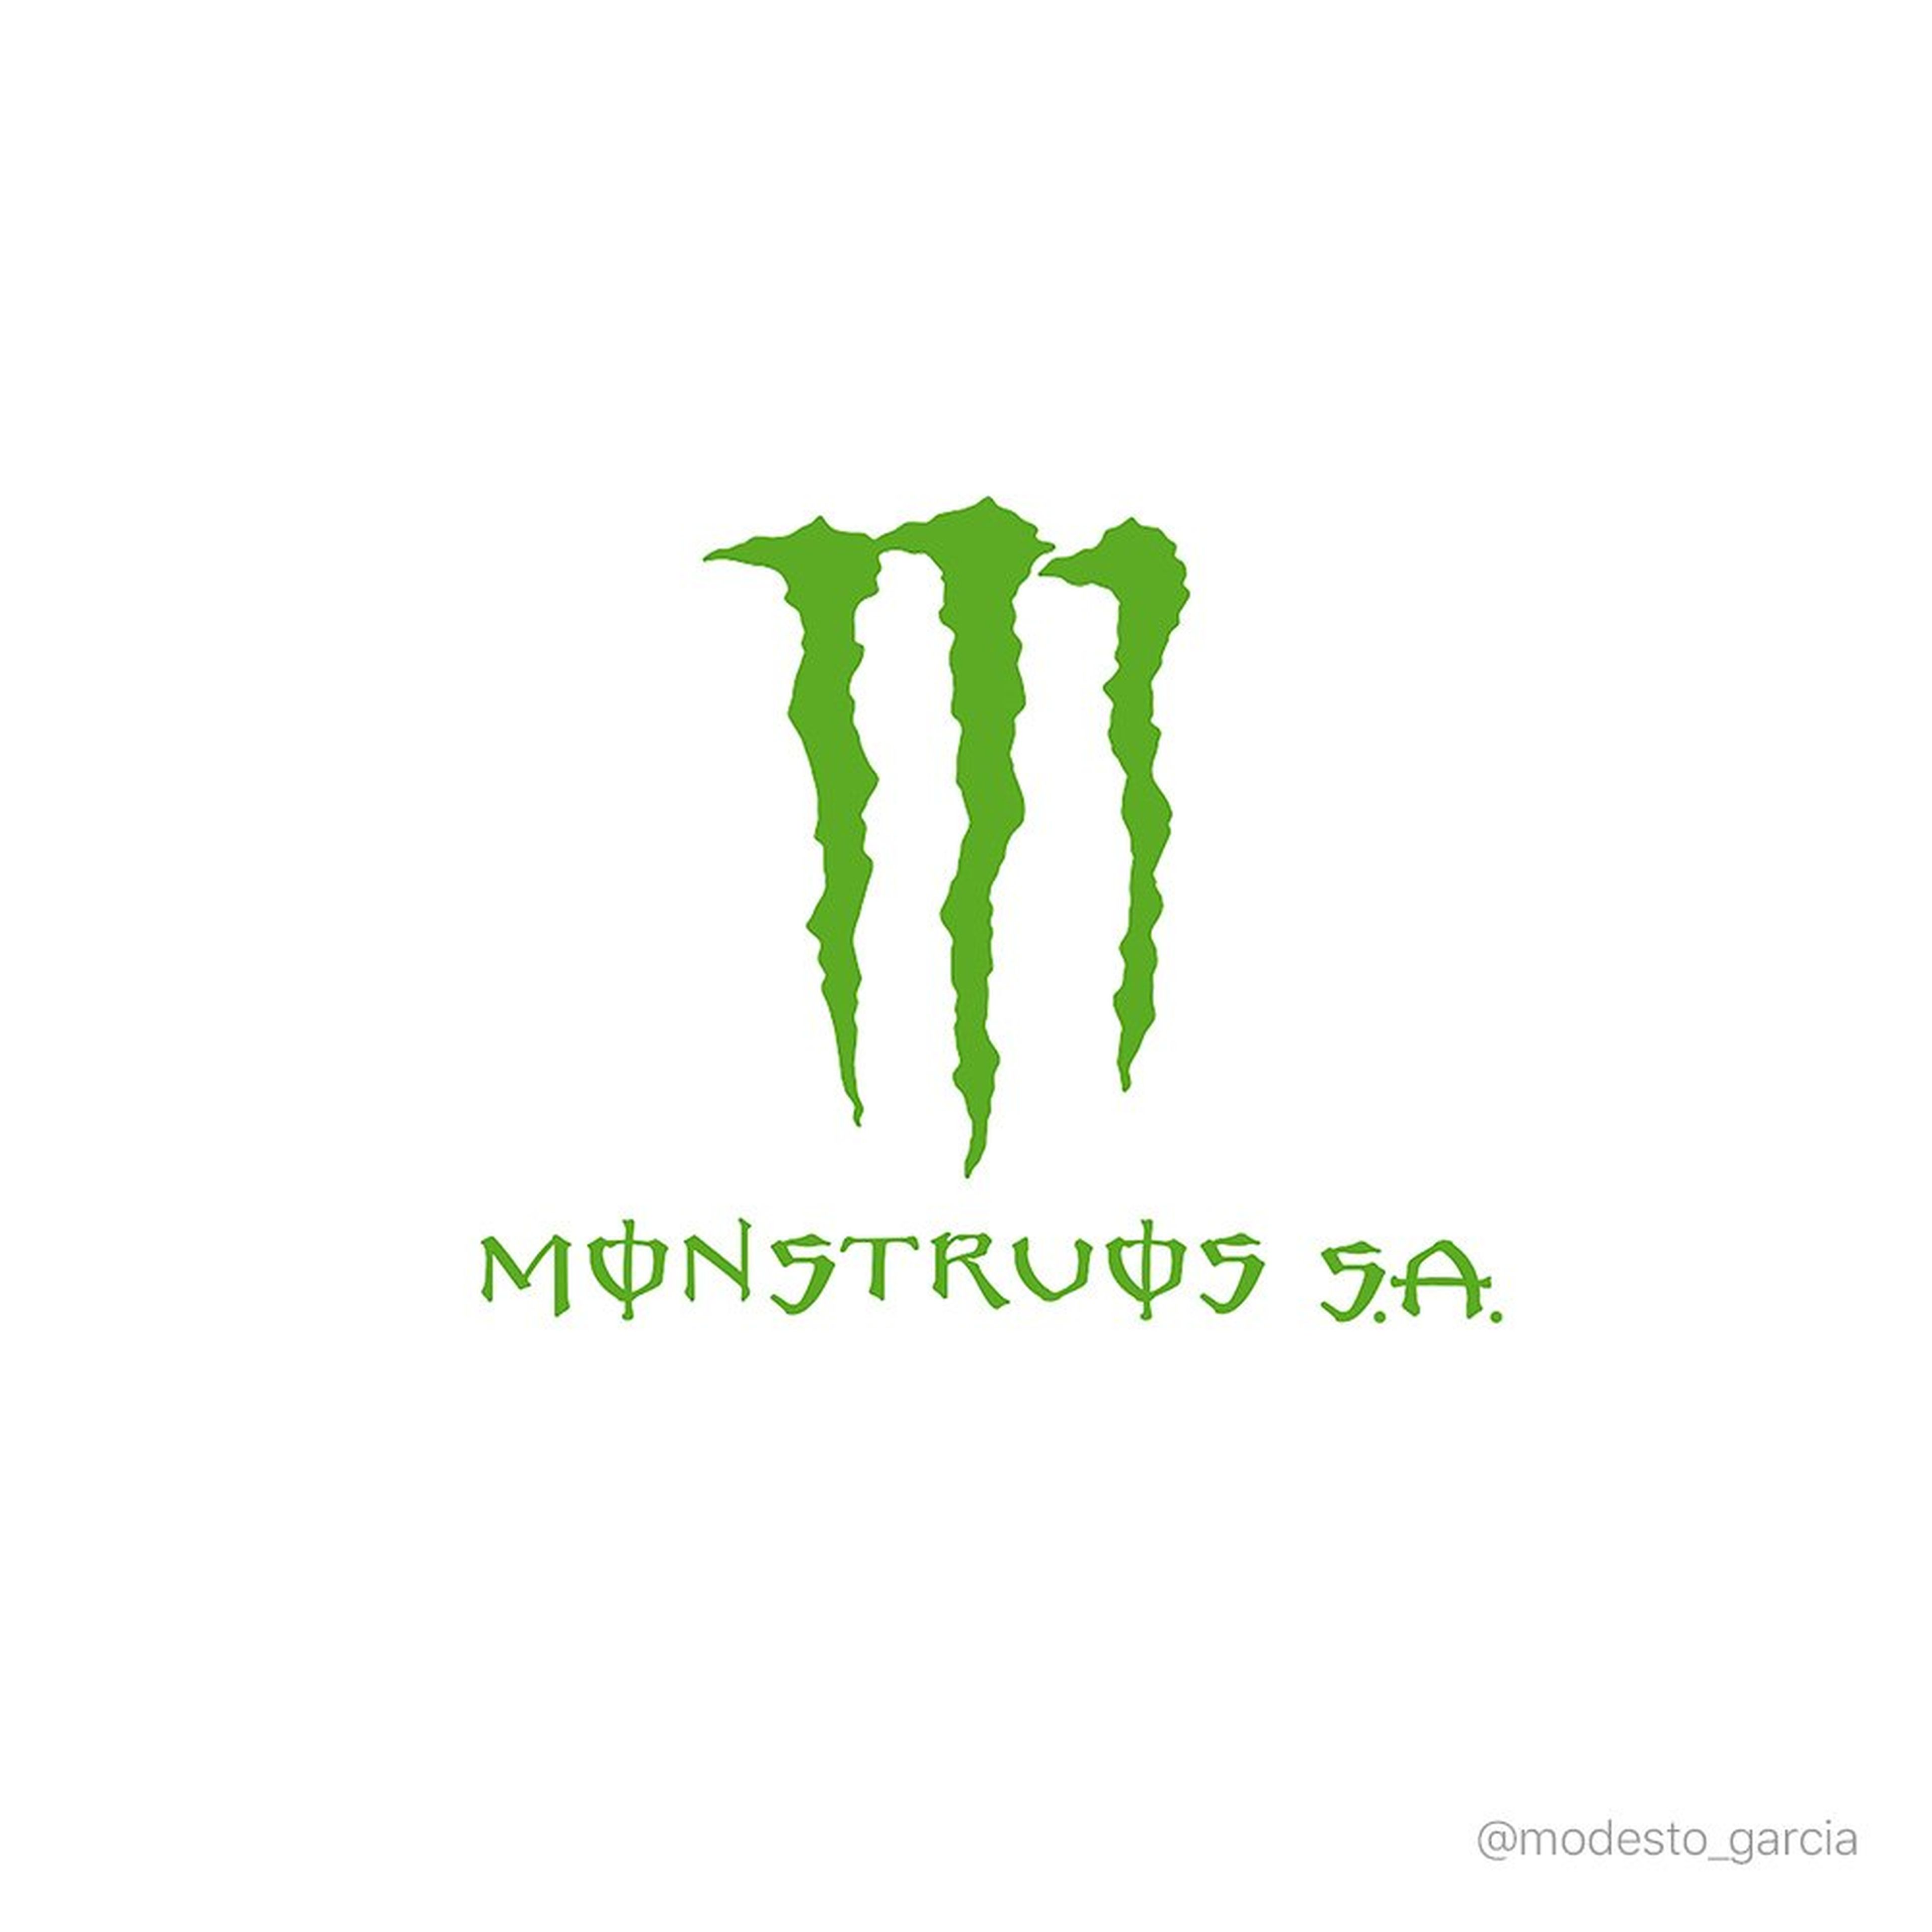 Si Monstruos fuera un logo